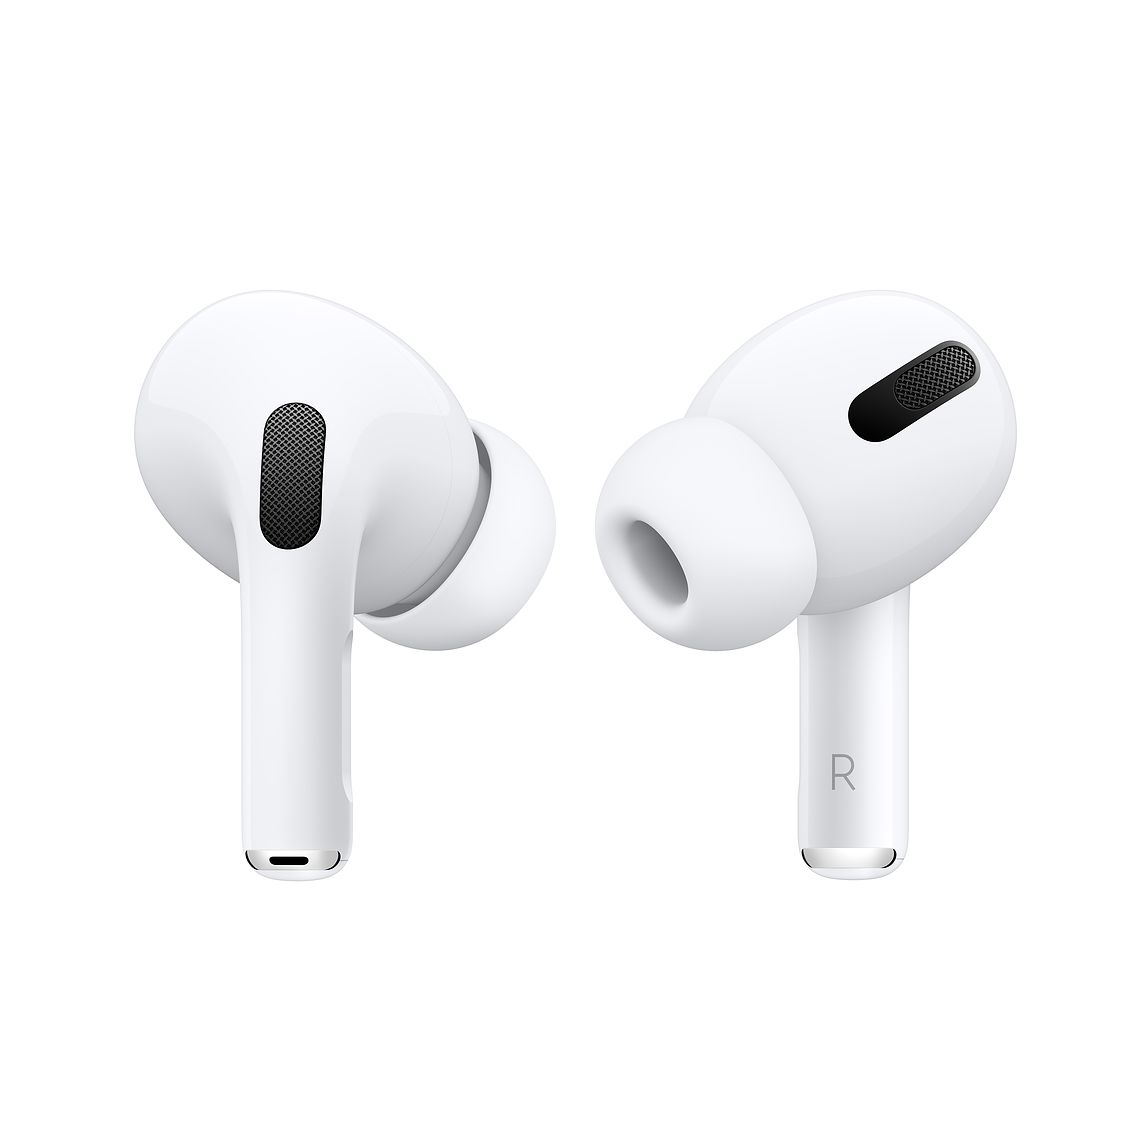 Cách sử dụng tai nghe AirPods MagSafe để sạc không dây trên các thiết bị Apple như iPhone, MacBook và iPad?
